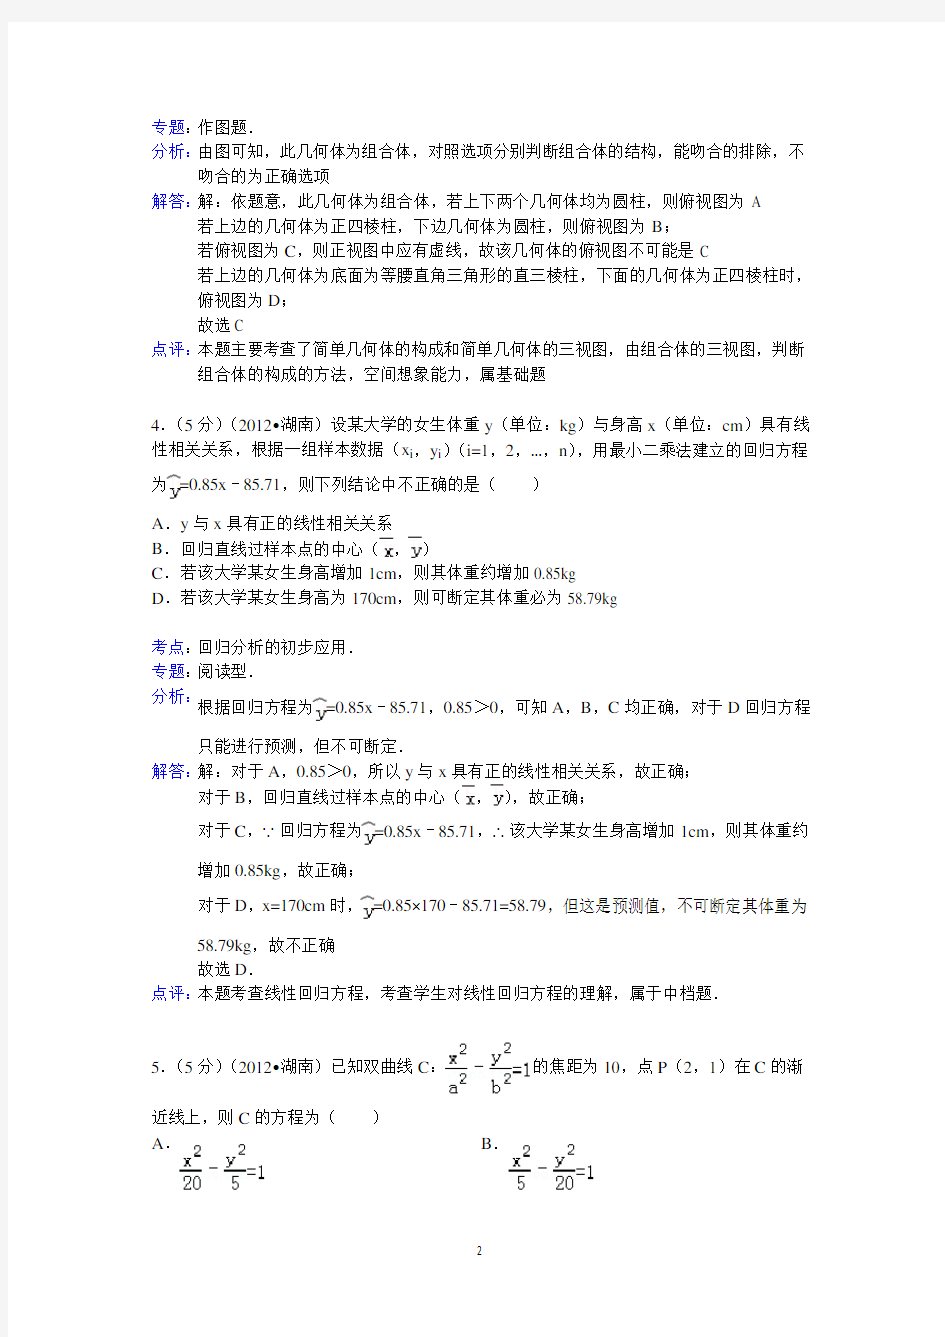 2012年湖南省高考数学试卷(理科)答案与解析